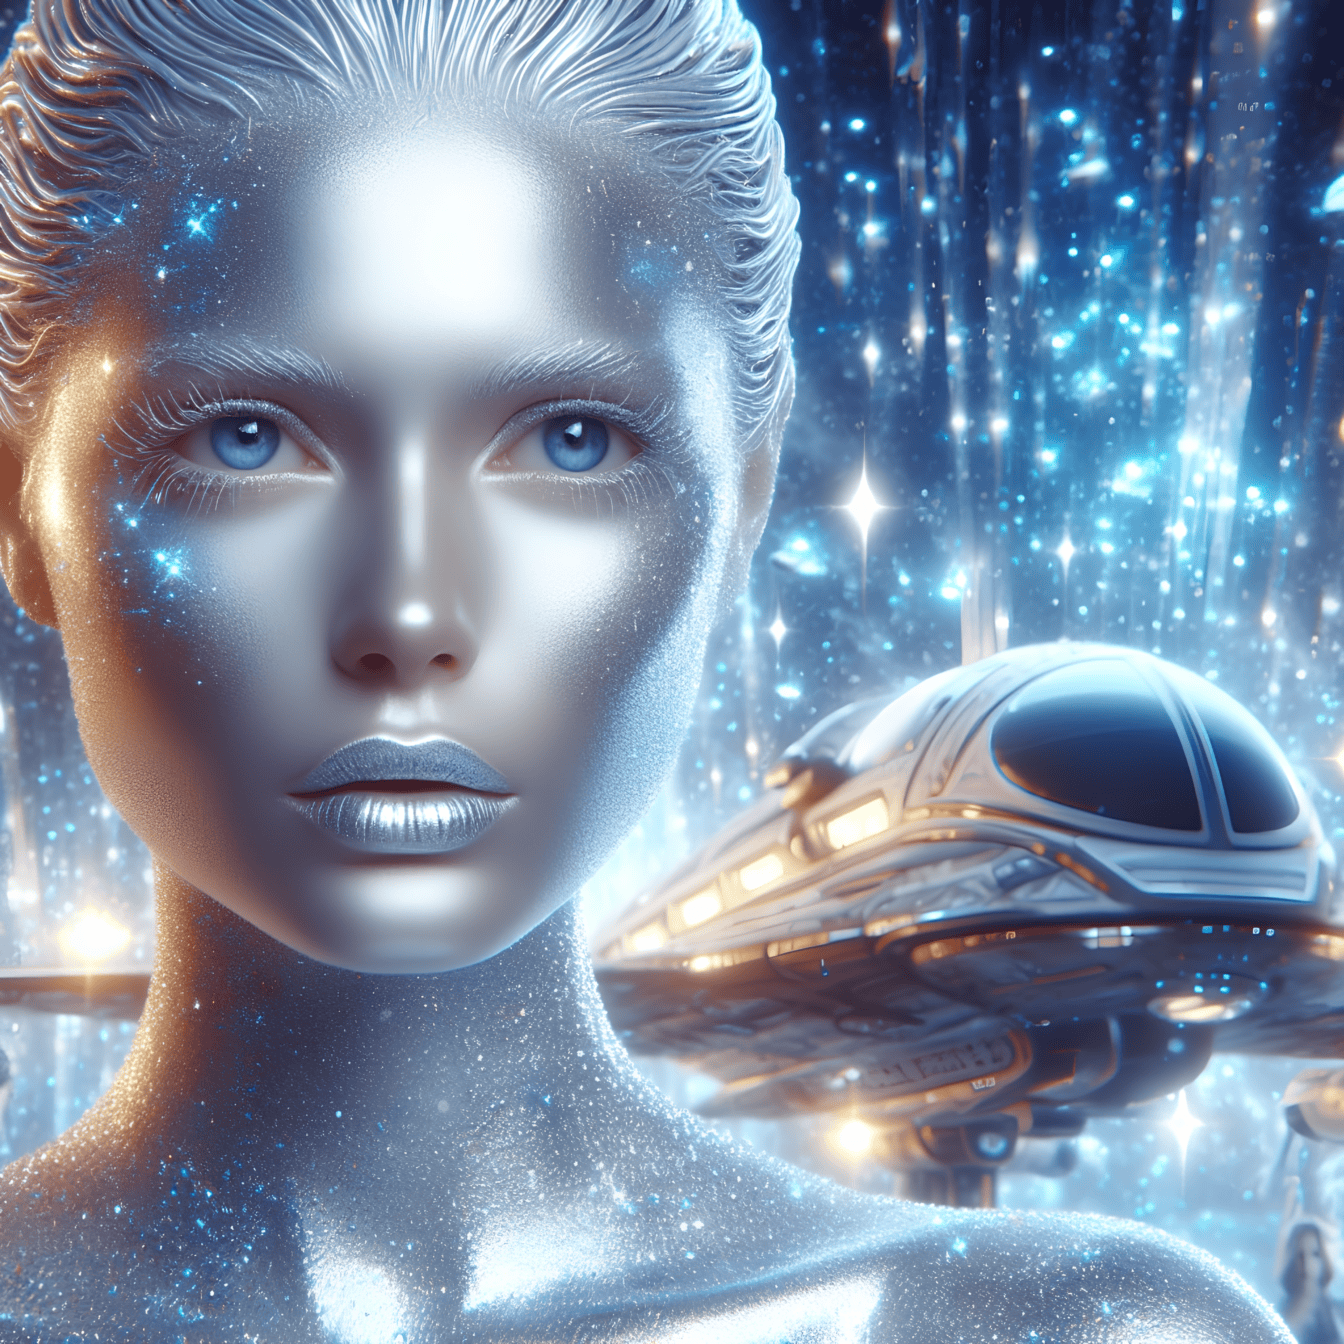 Et humanoid udenjordisk højere væsen i kvindelig form med skinnende skinnende makeup og rumfartøjer i baggrunden